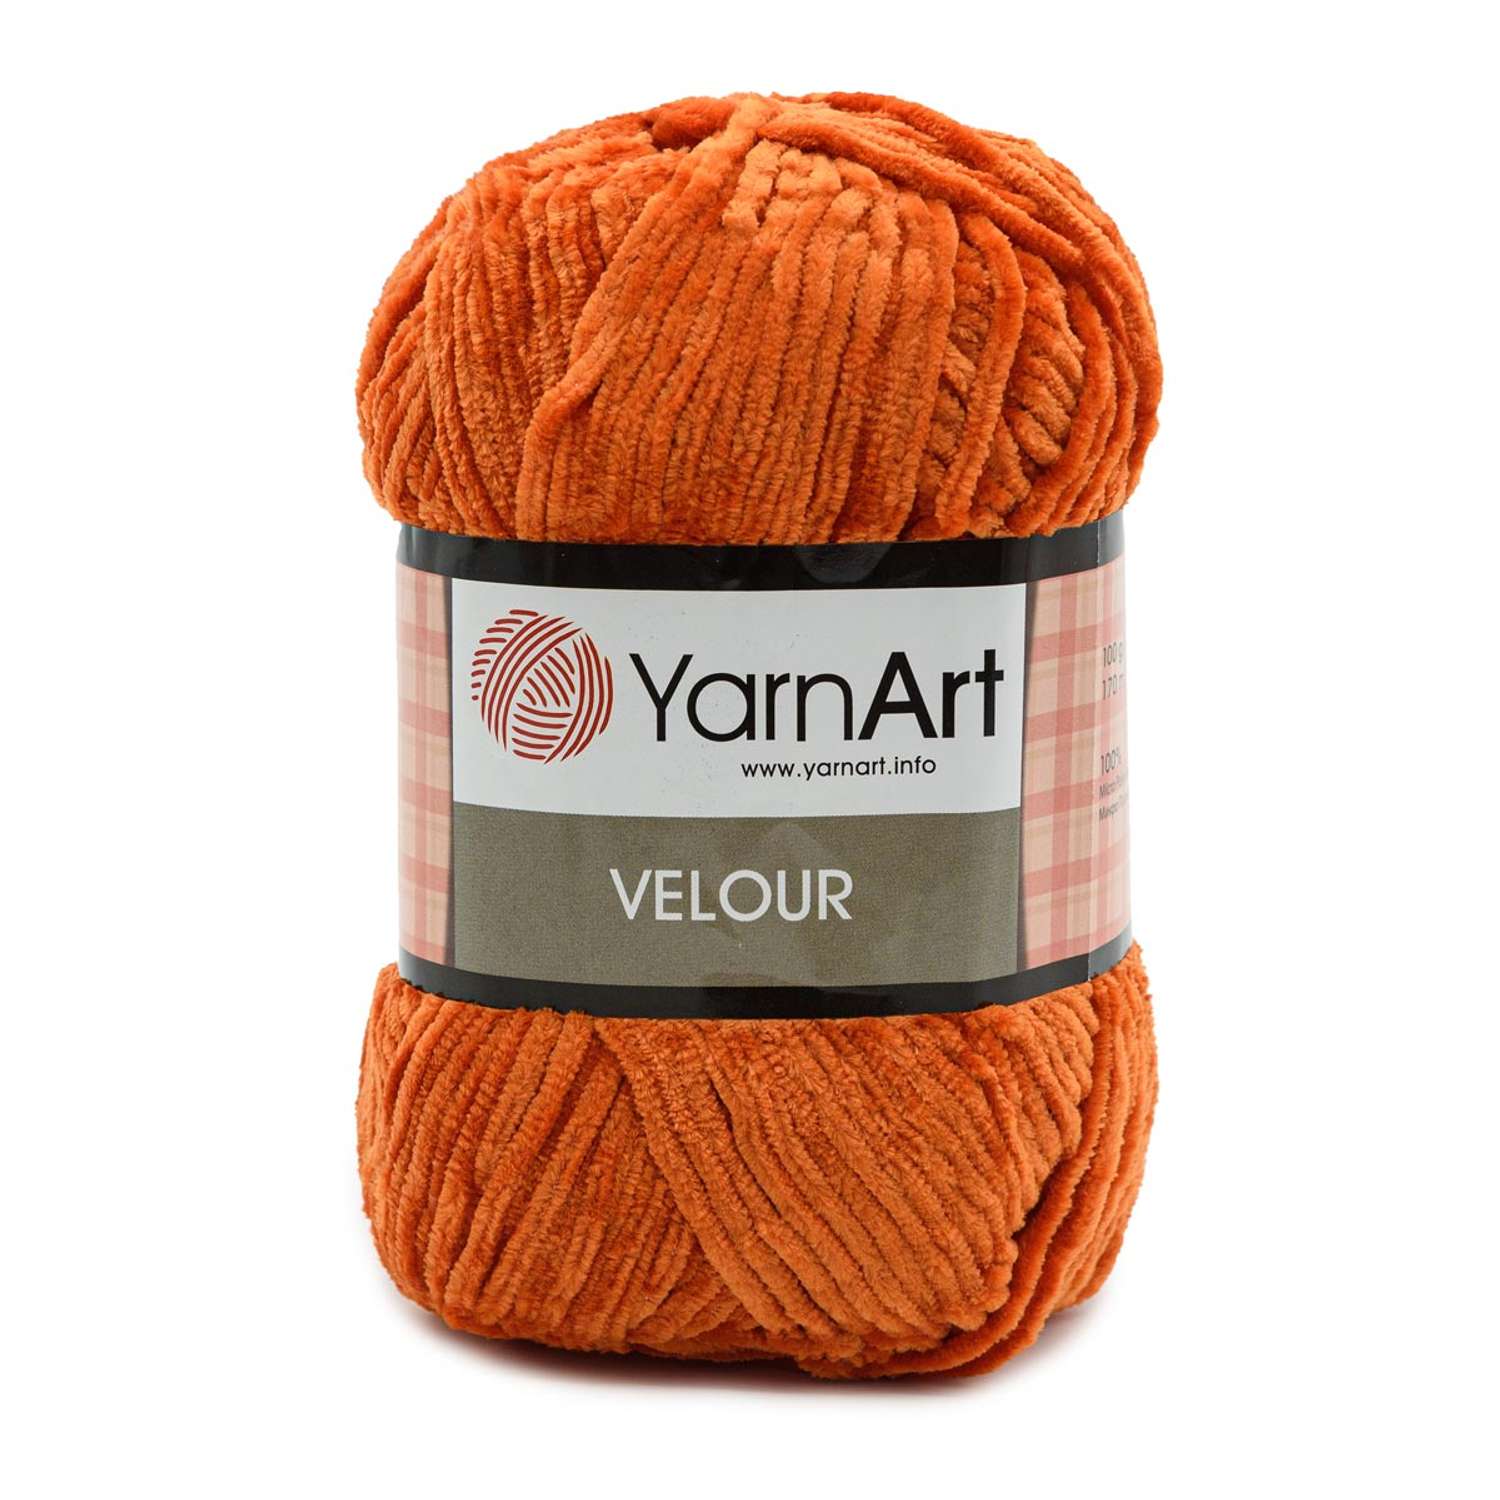 Пряжа для вязания YarnArt Velour 100 г 170 м микрополиэстер мягкая велюровая 5 мотков 865 оранжевый - фото 6